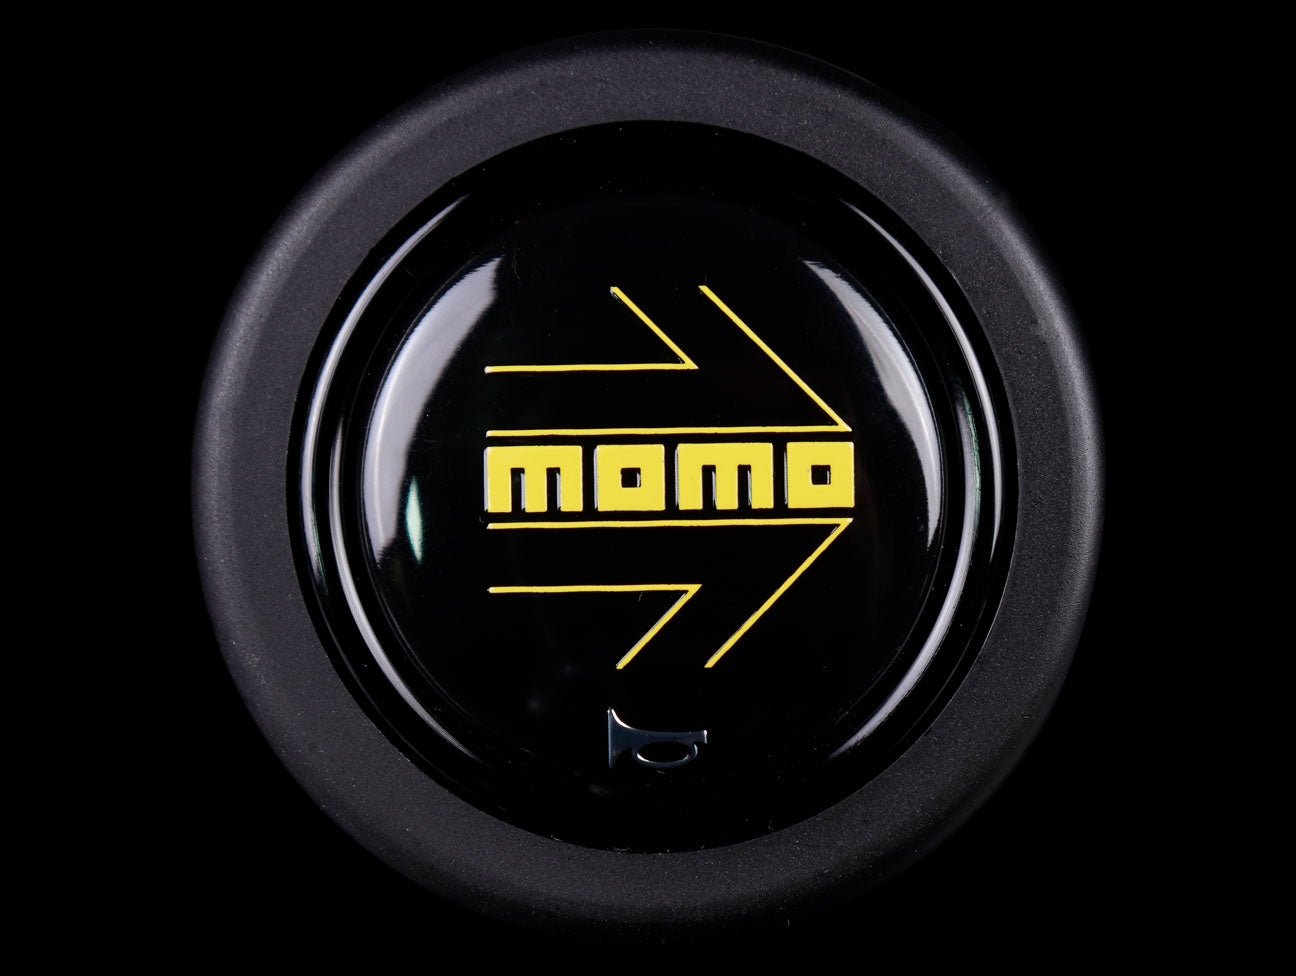 Momo Horn Button - Gloss Black - Yellow Logo